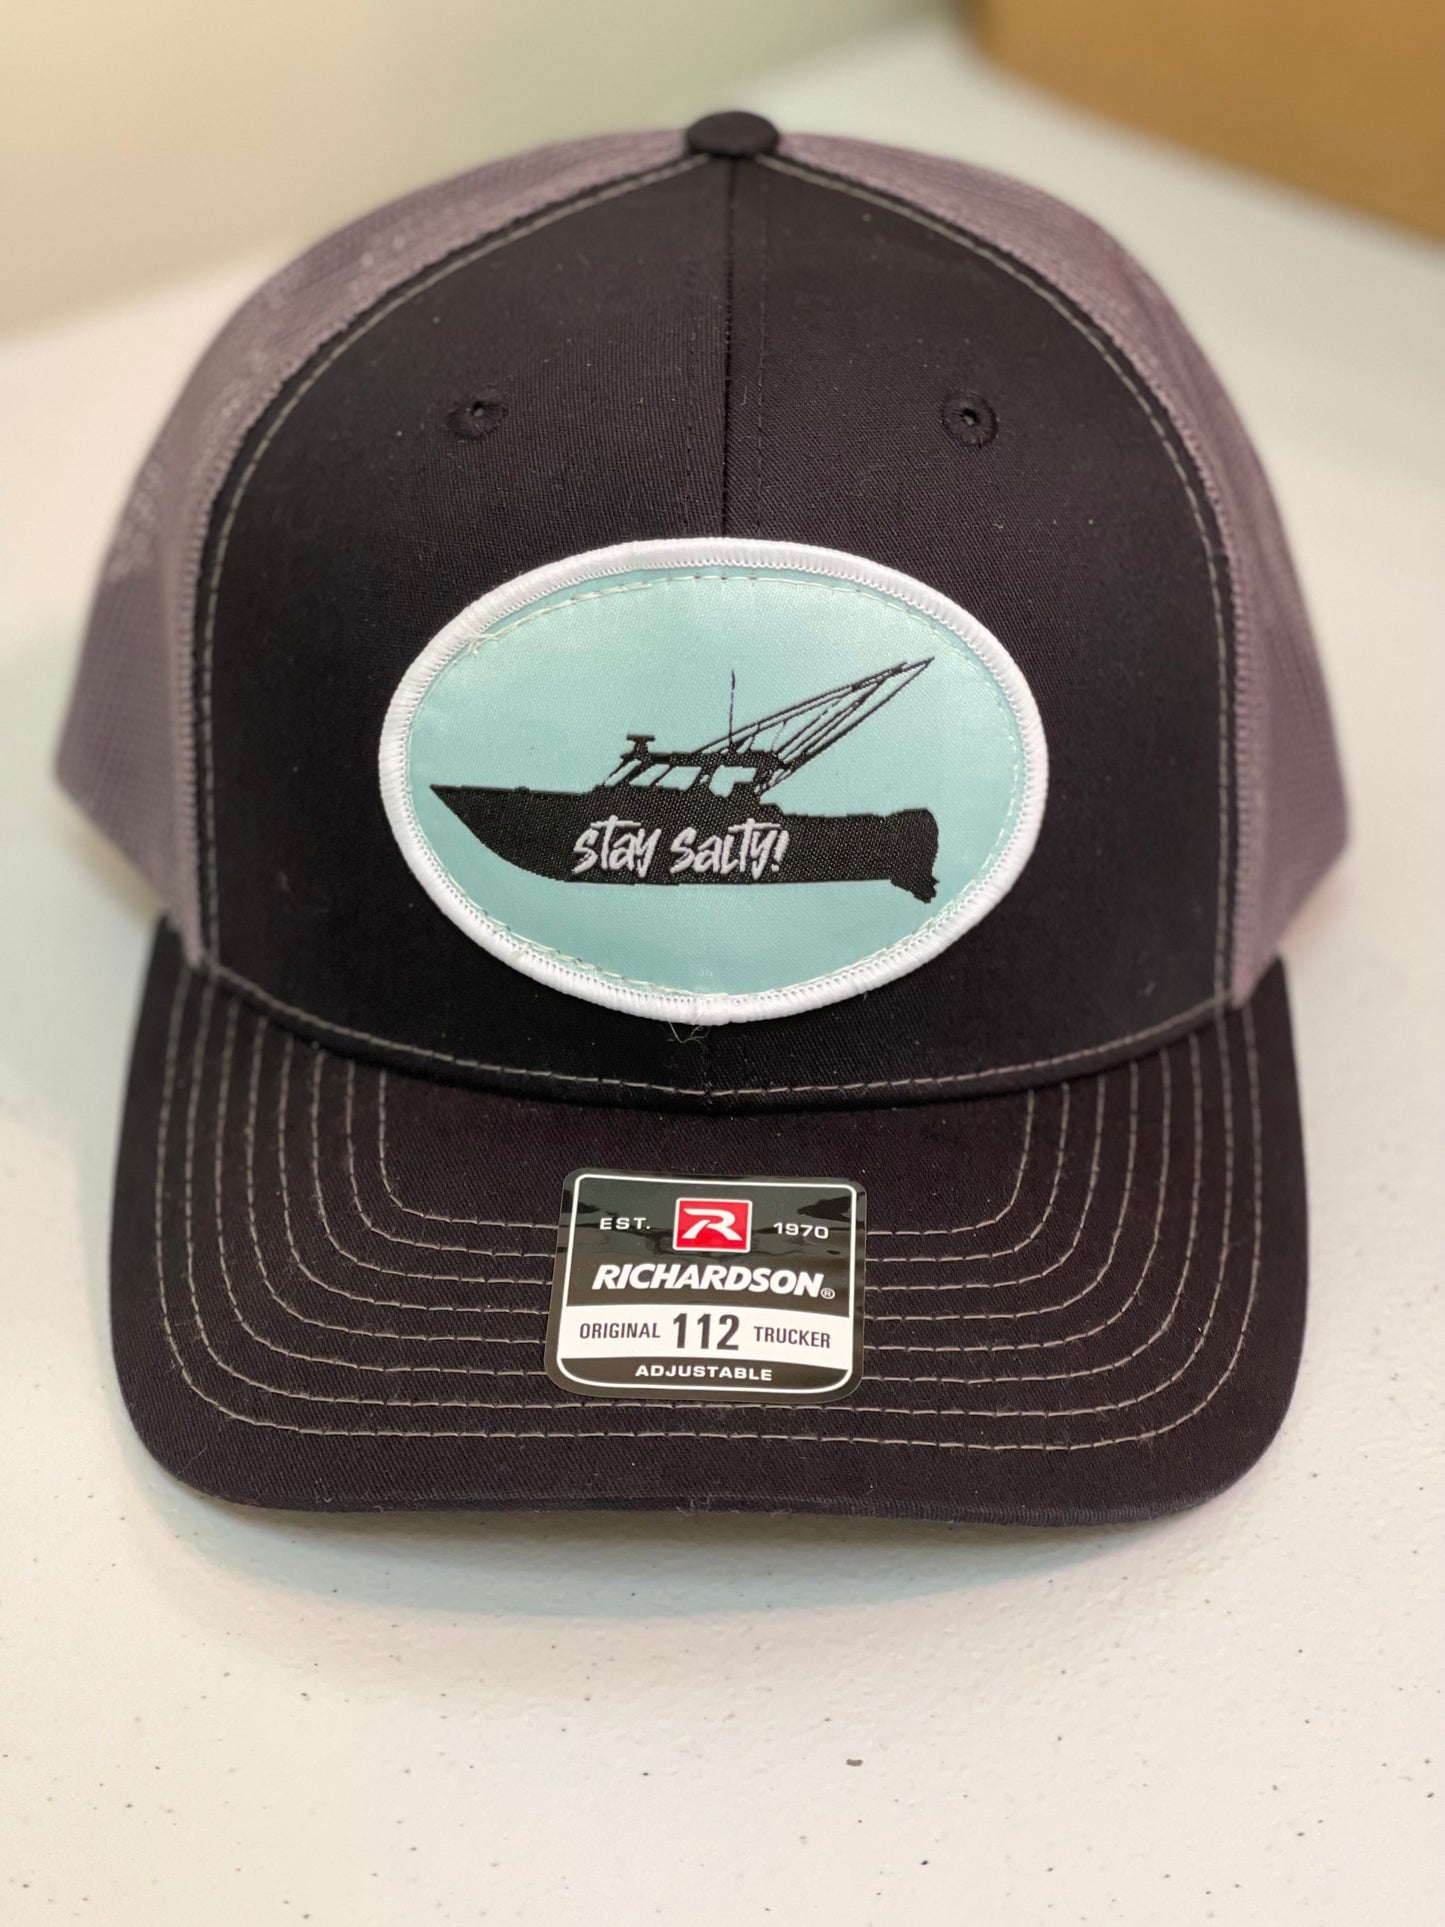 Snapback Trucker Hat - "Stay Salty!" Fishing Boat